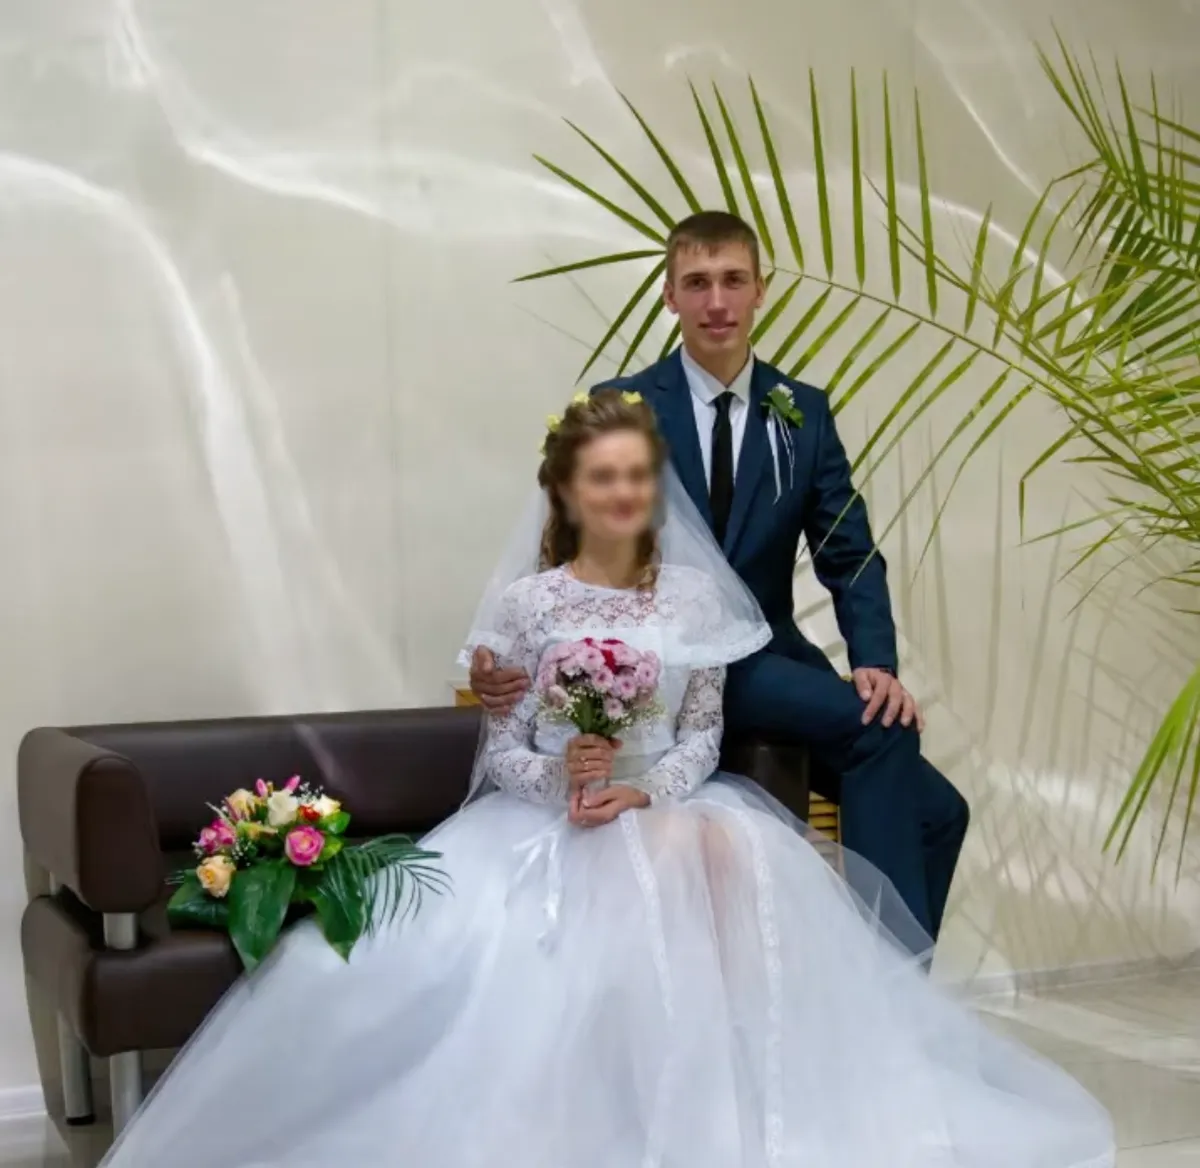 По данным соцсетей, Евгений Чернокнижный был женат